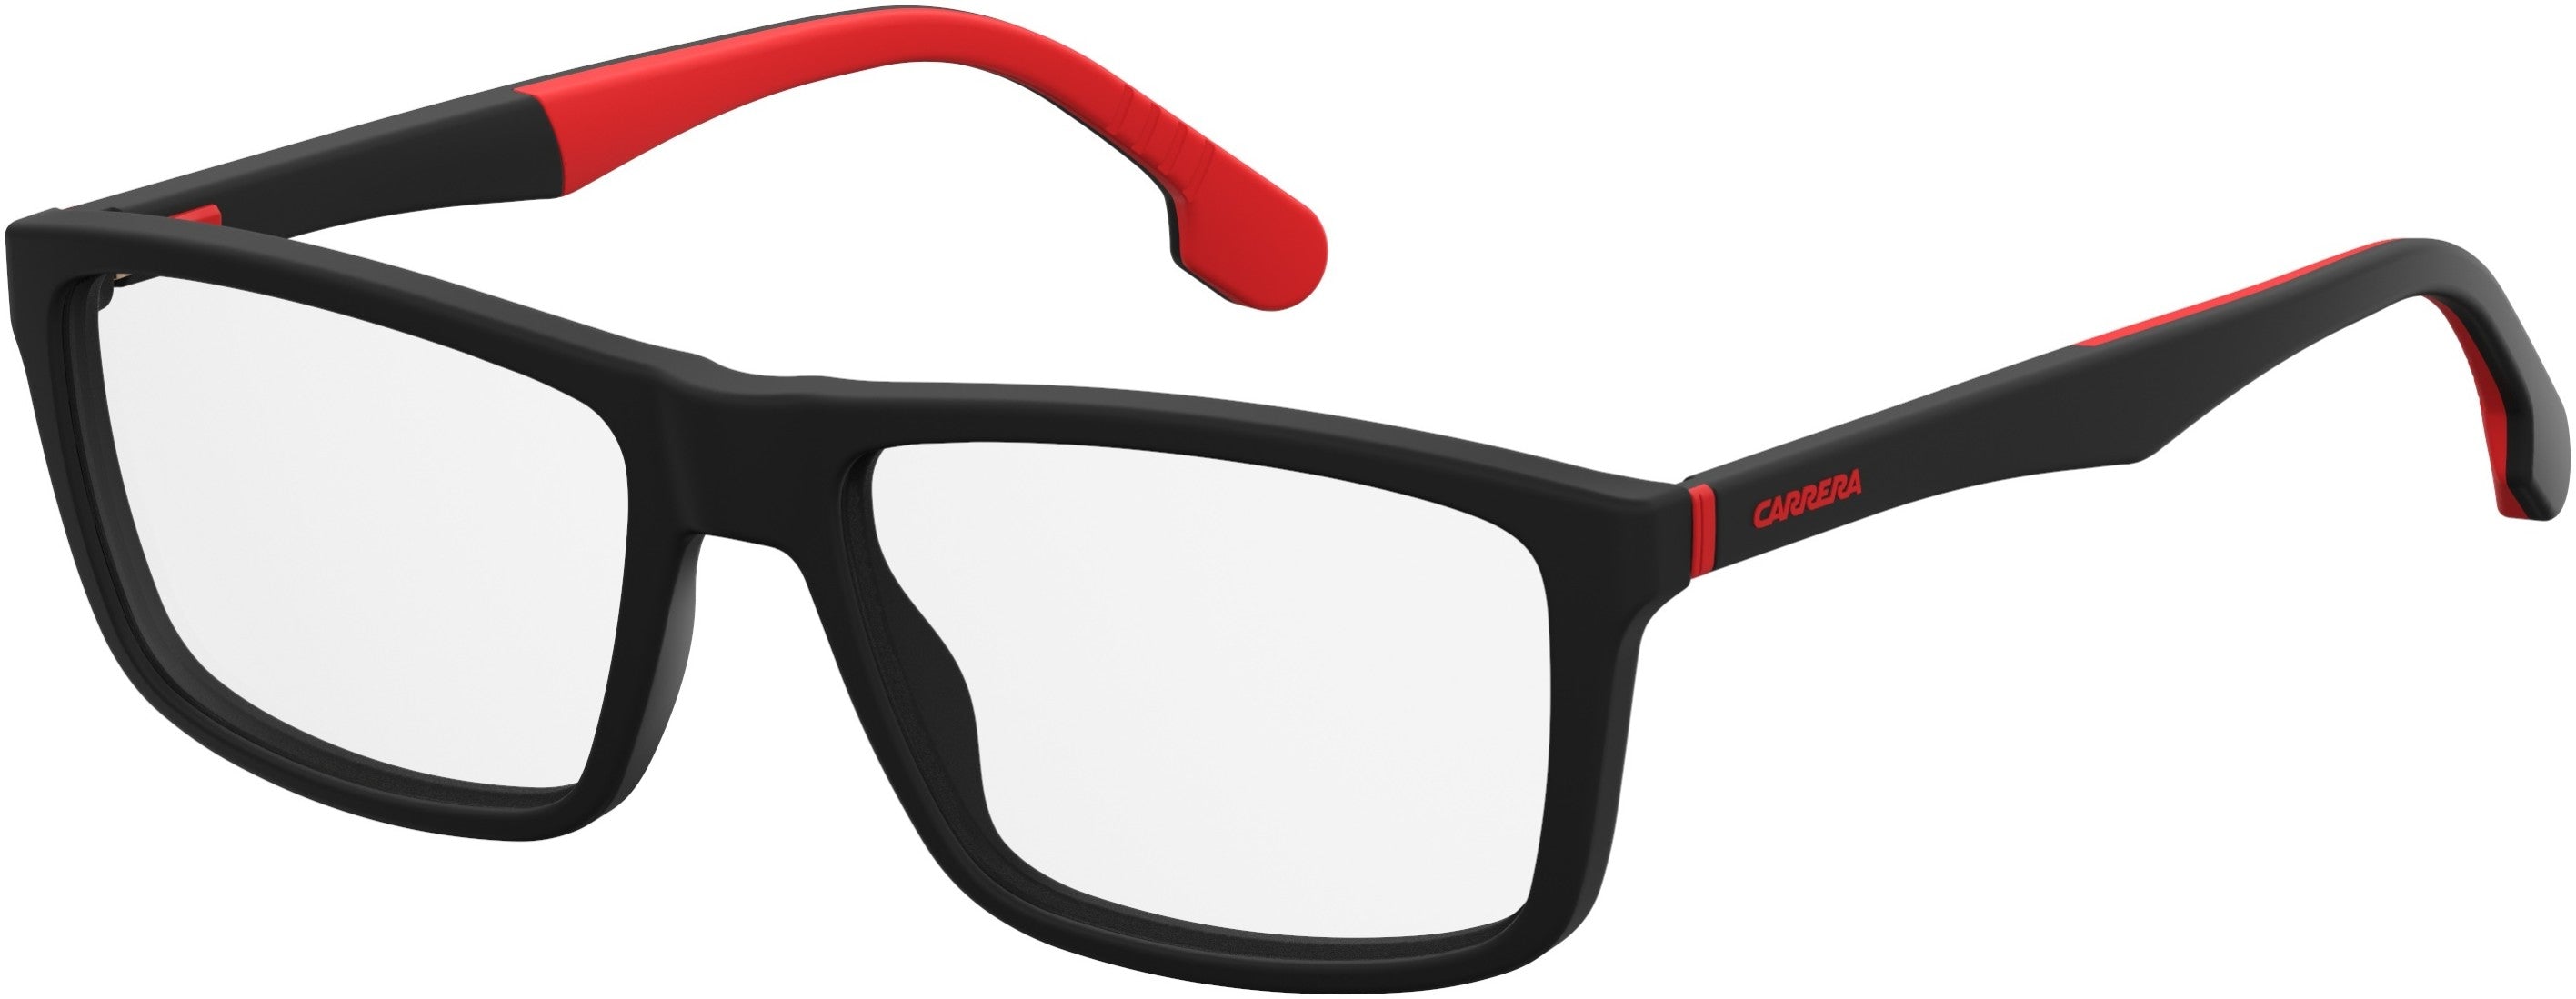  Carrera 8824/V Rectangular Eyeglasses 0003-0003  Matte Black (00 Demo Lens)